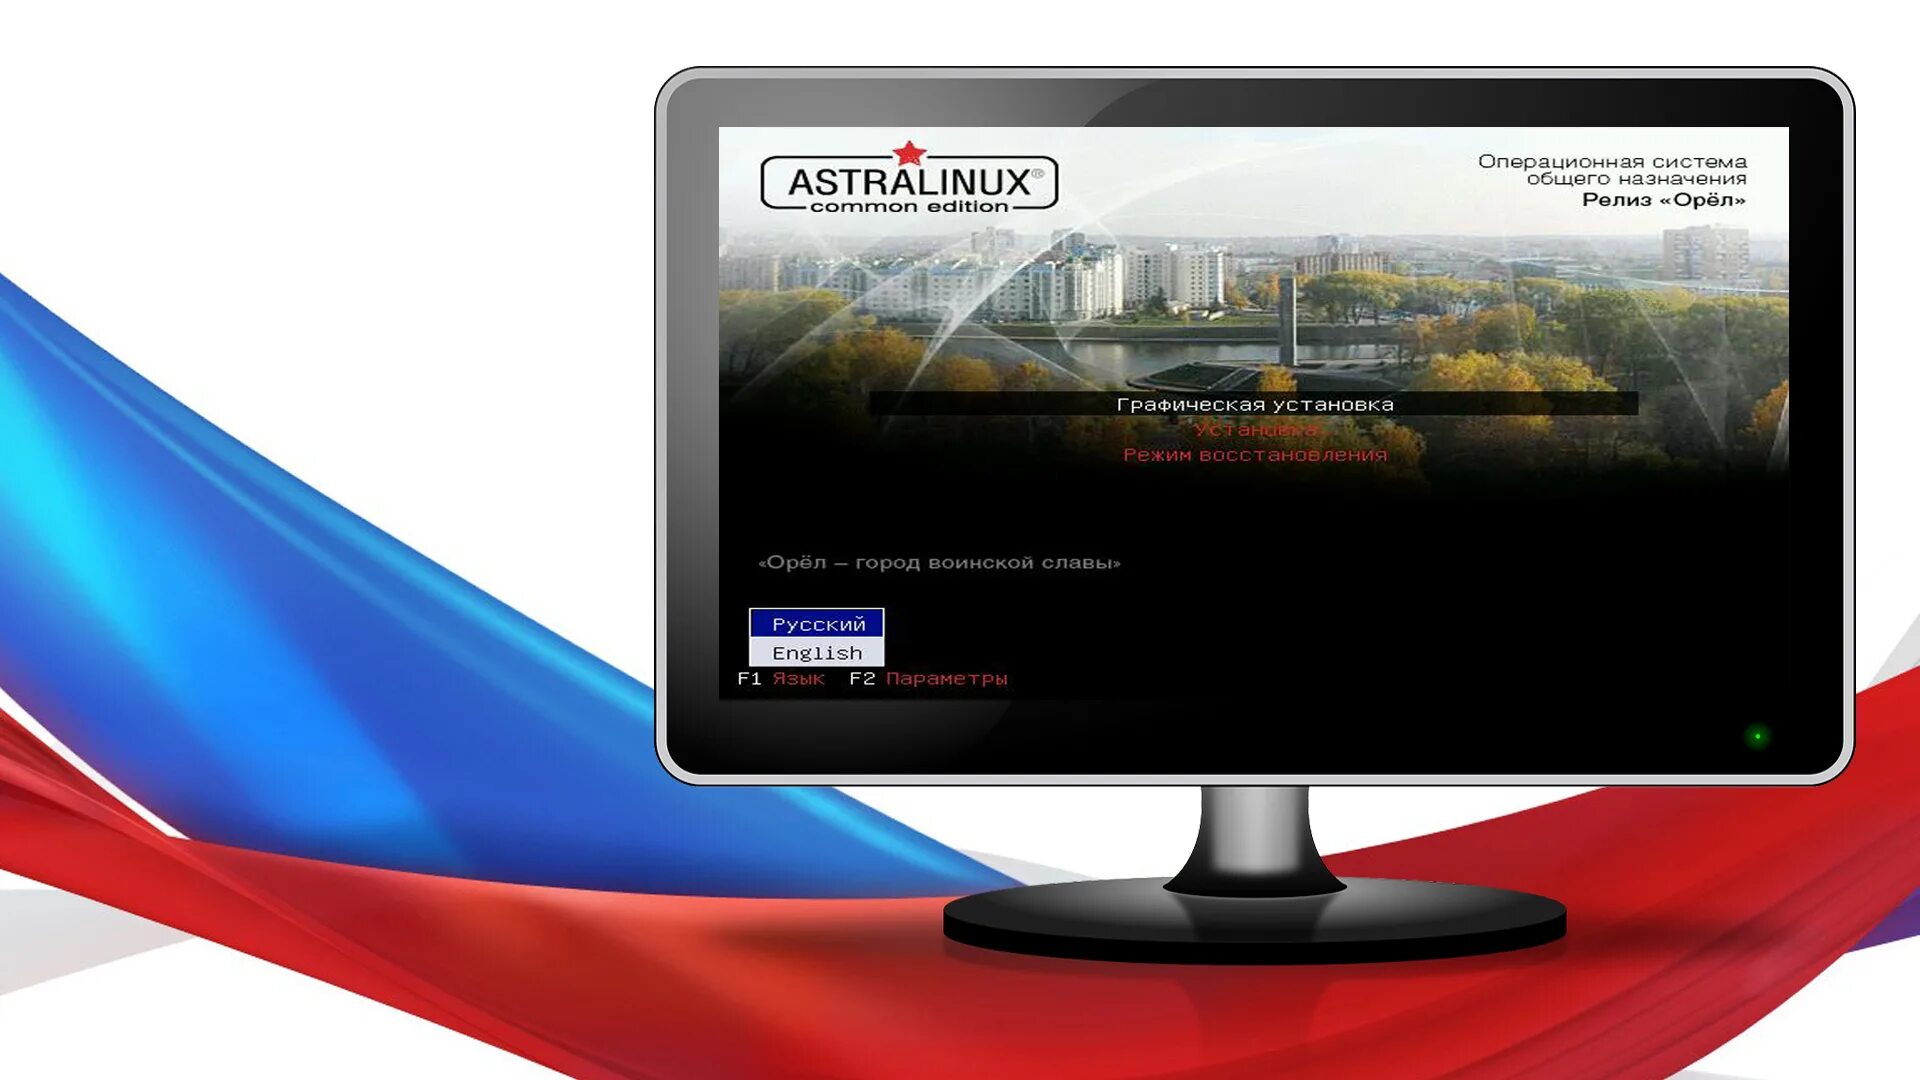 Российская os. Отечественные операционные системы Astra Linux. Astra Linux Special Edition Орел. Операционная система Astra Linux.